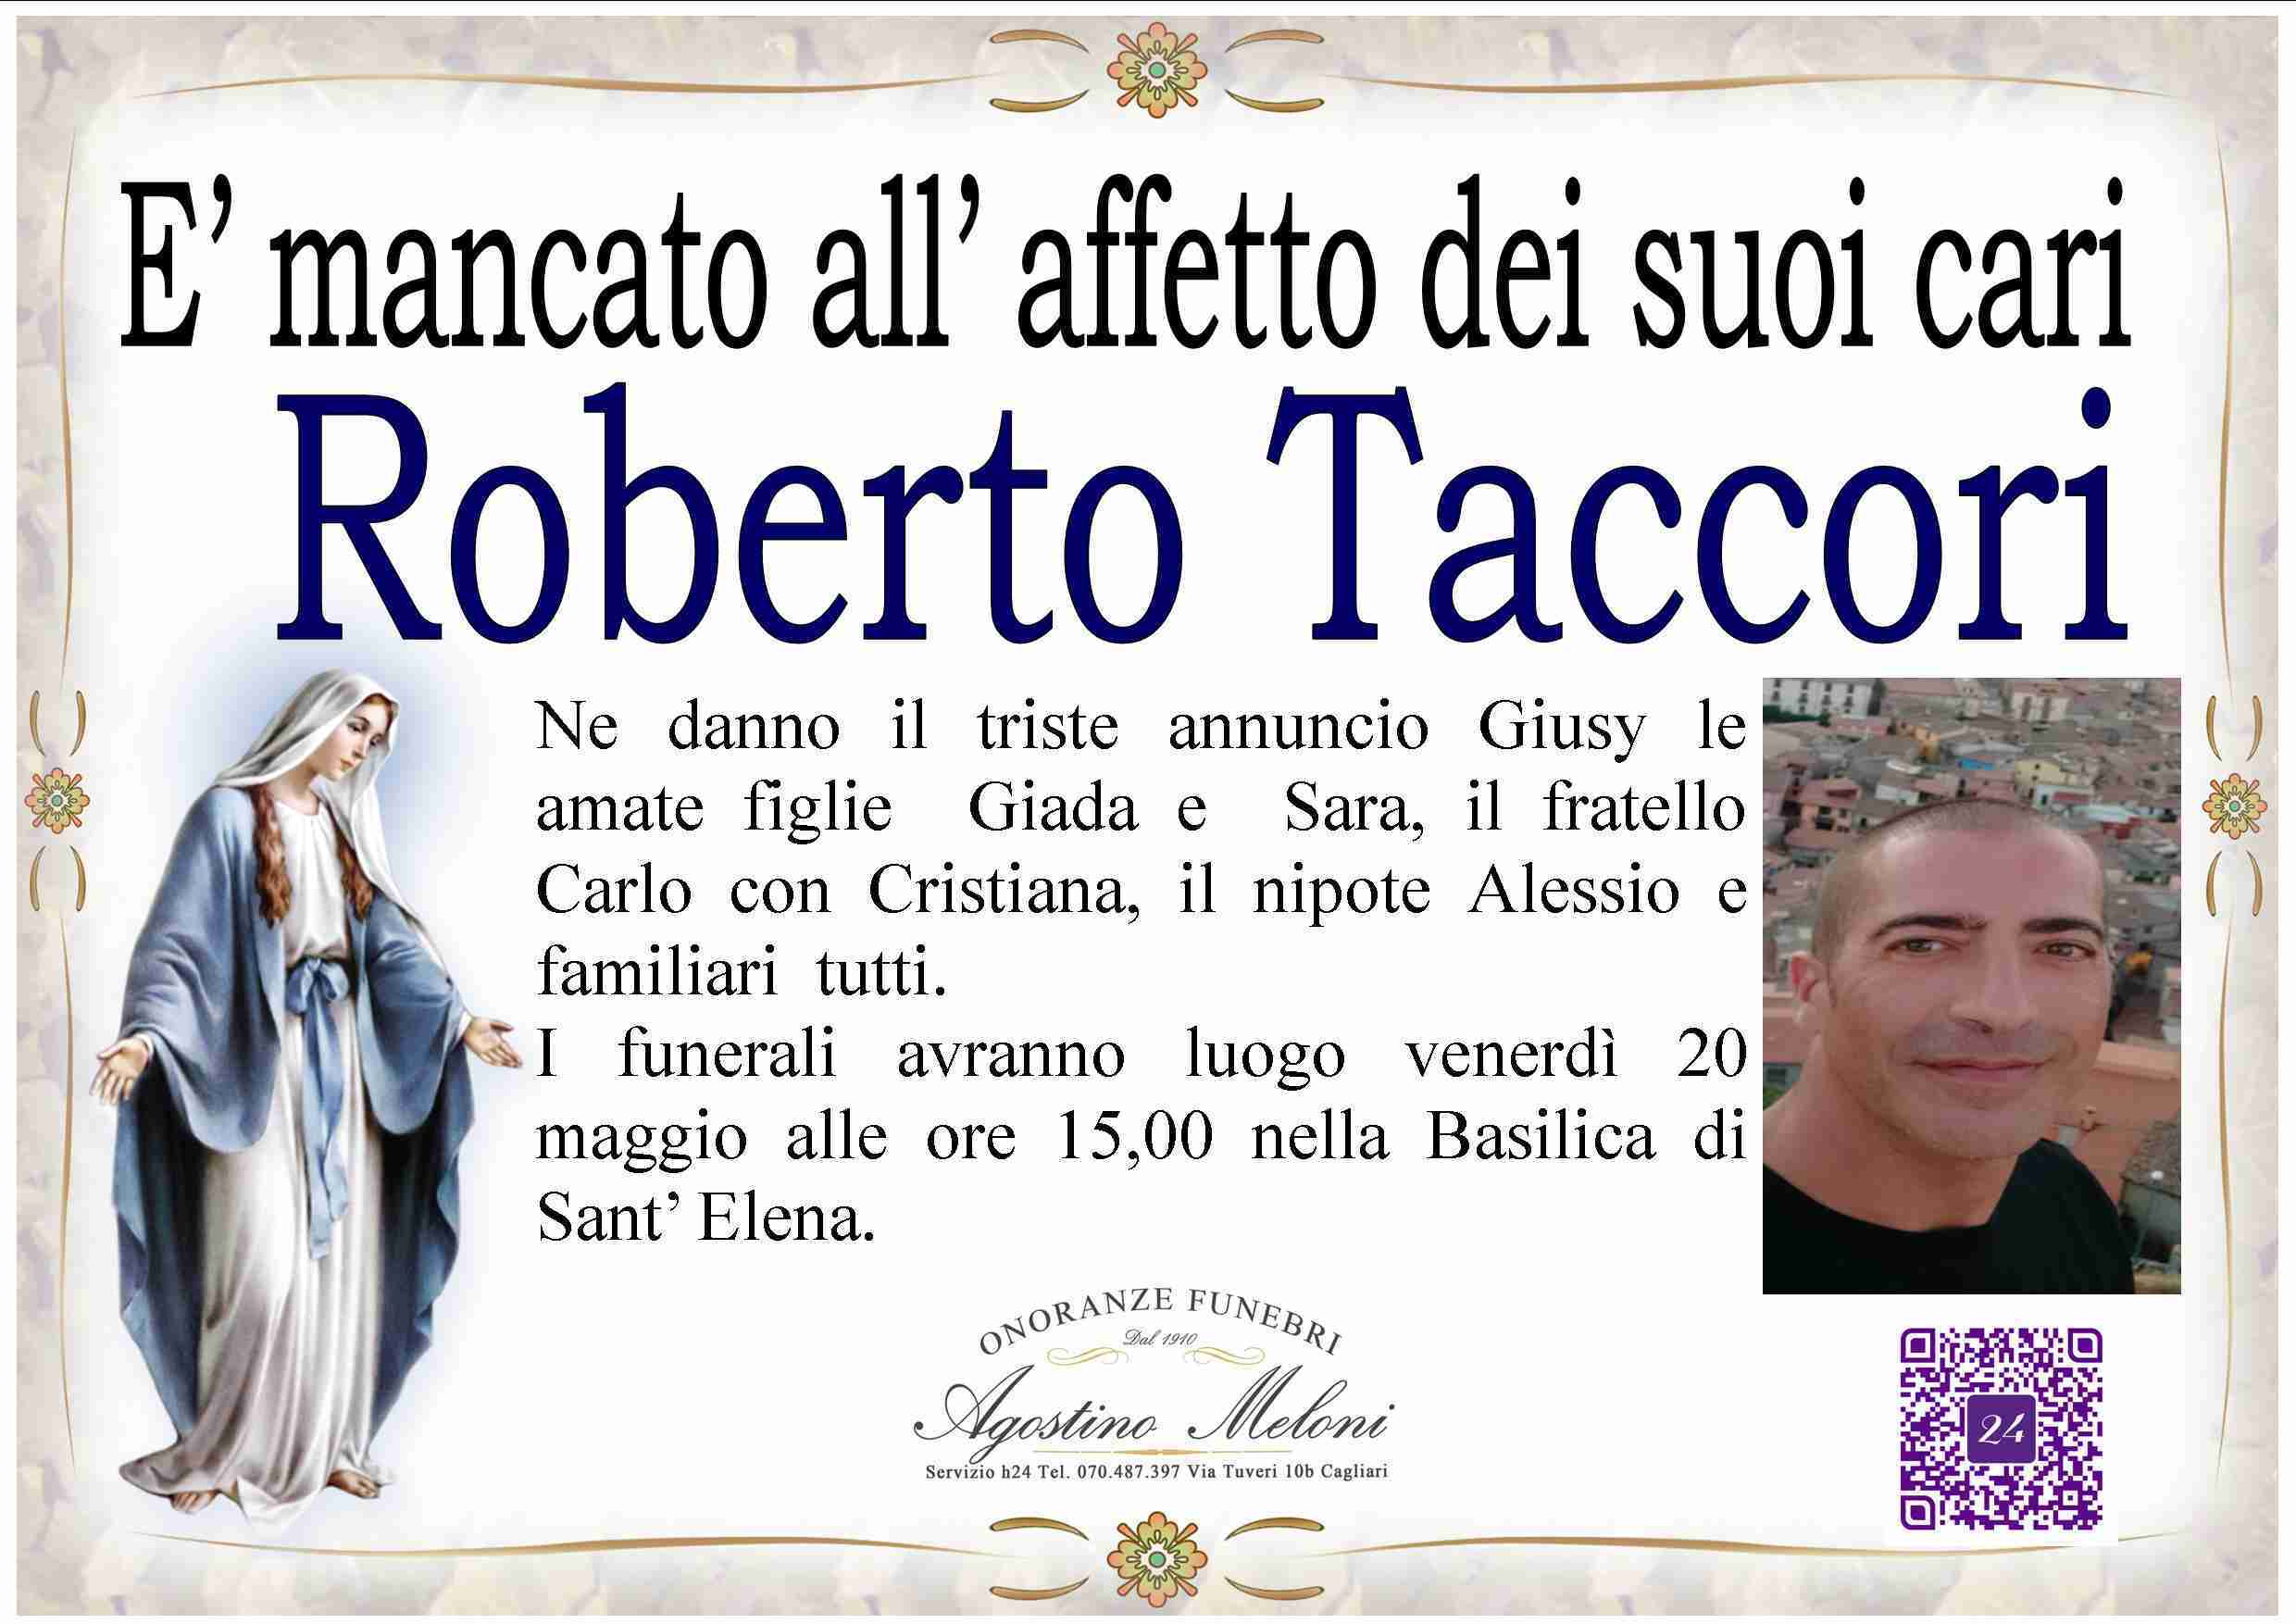 Roberto Taccori